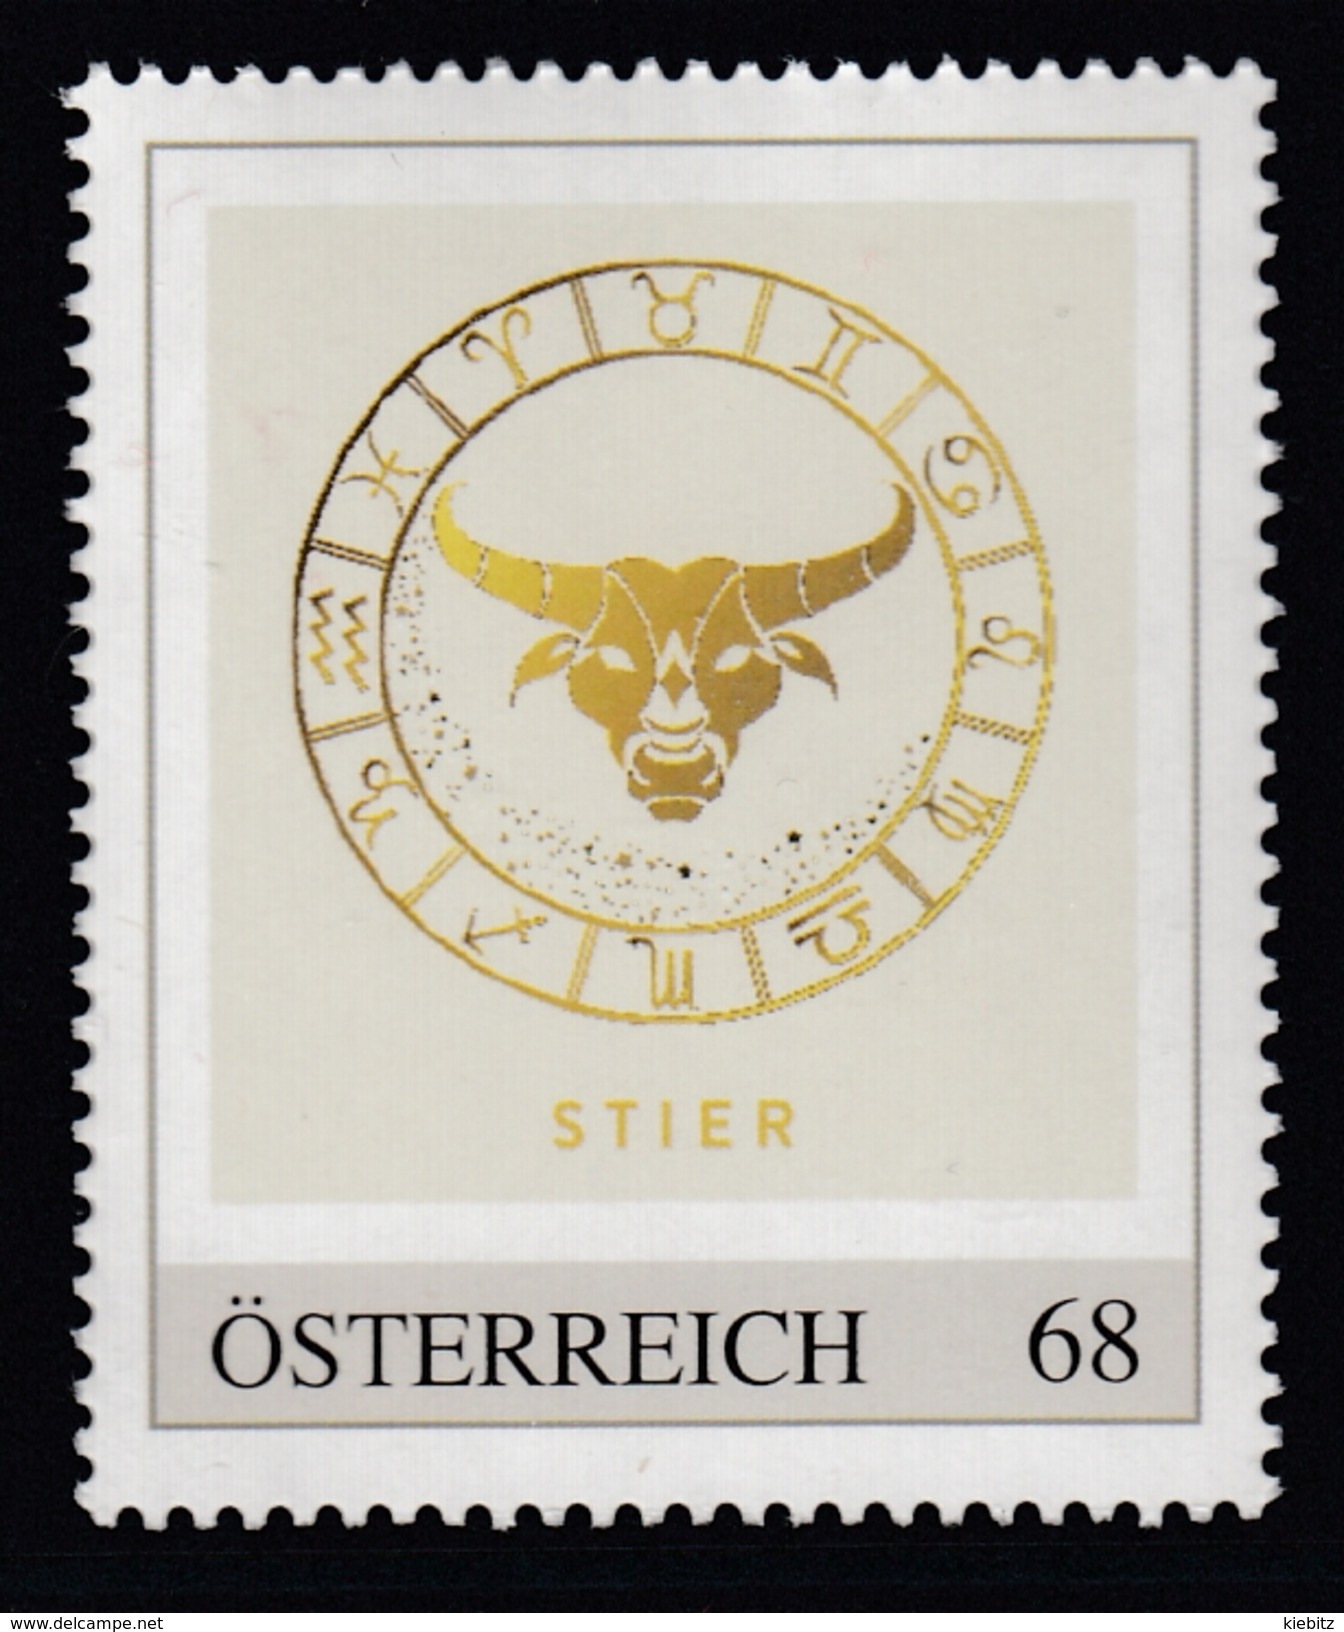 ÖSTERREICH 2016 ** Astrologie - STIER Sternzeichen - PM Personalized Stamp MNH - Astrologie